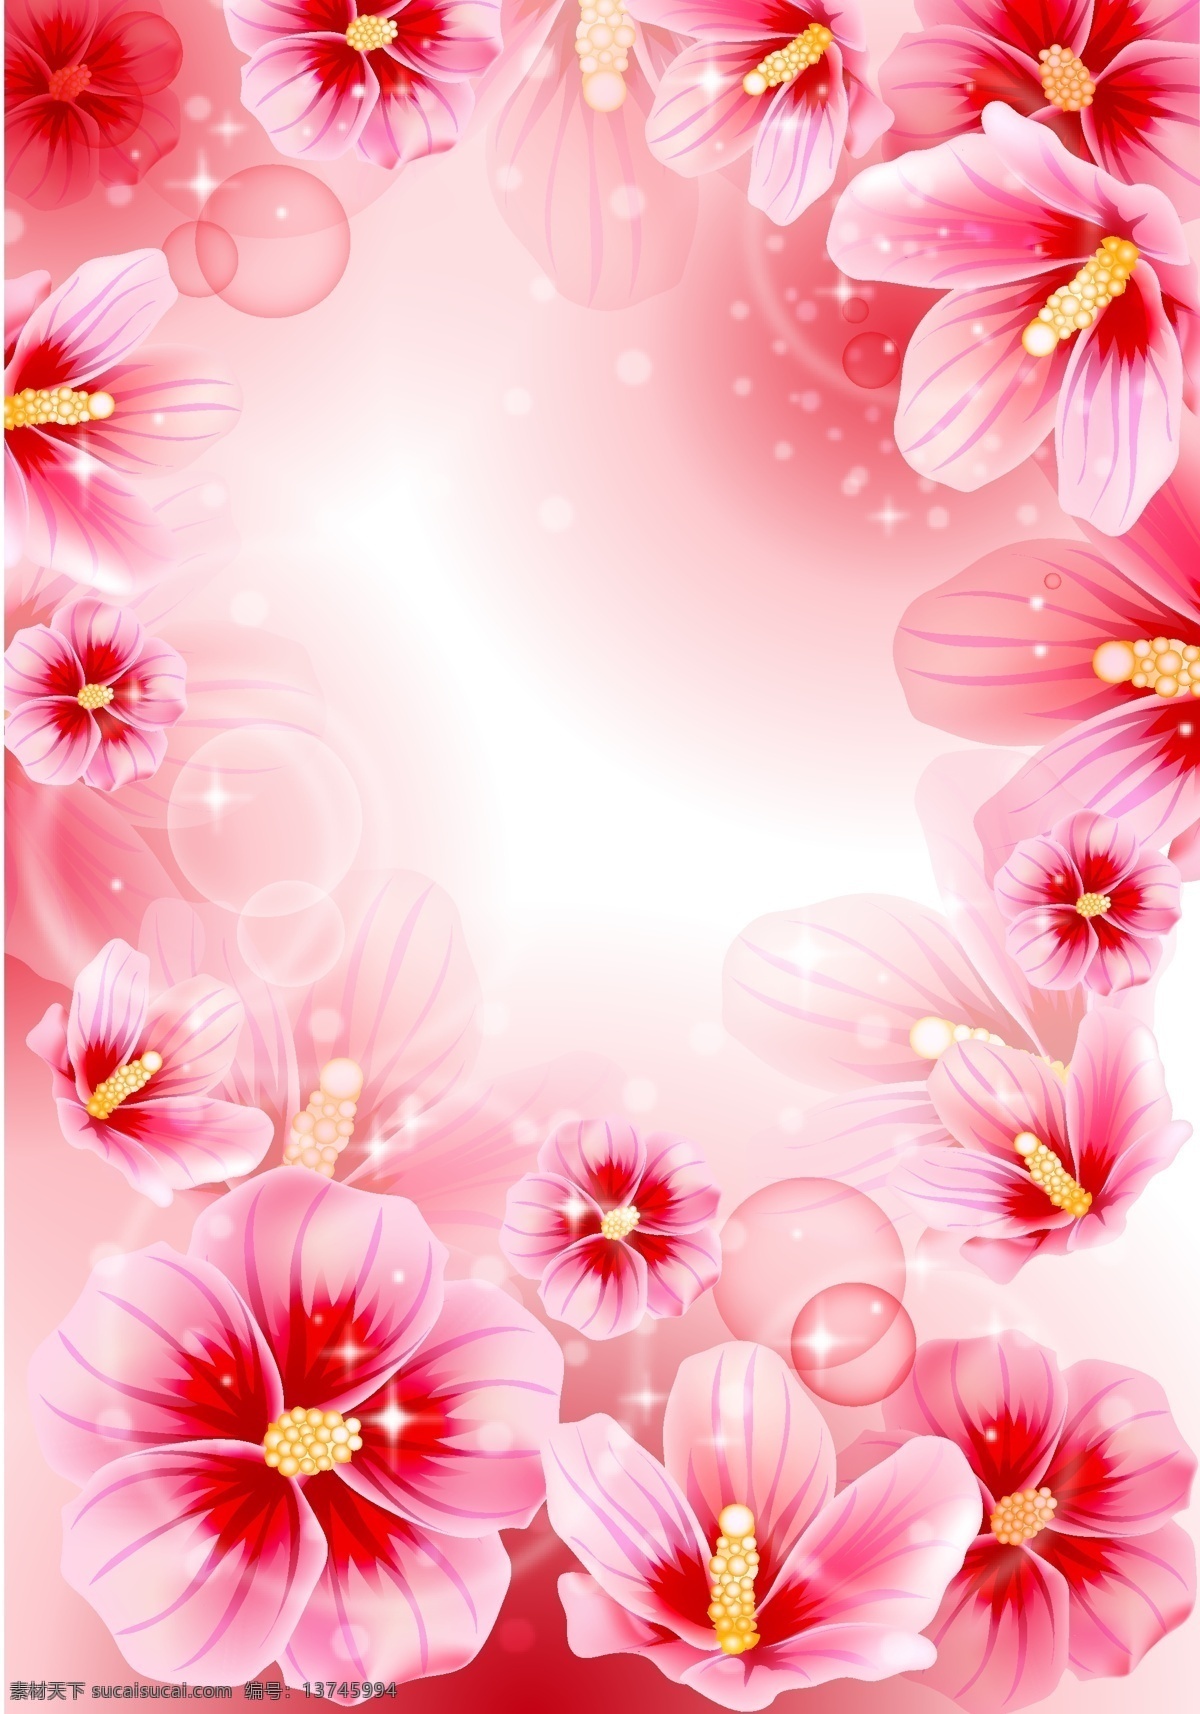 木槿花 美丽的 花卉 笔记本封面 广告设计素材 包装印花 底纹边框 花边花纹